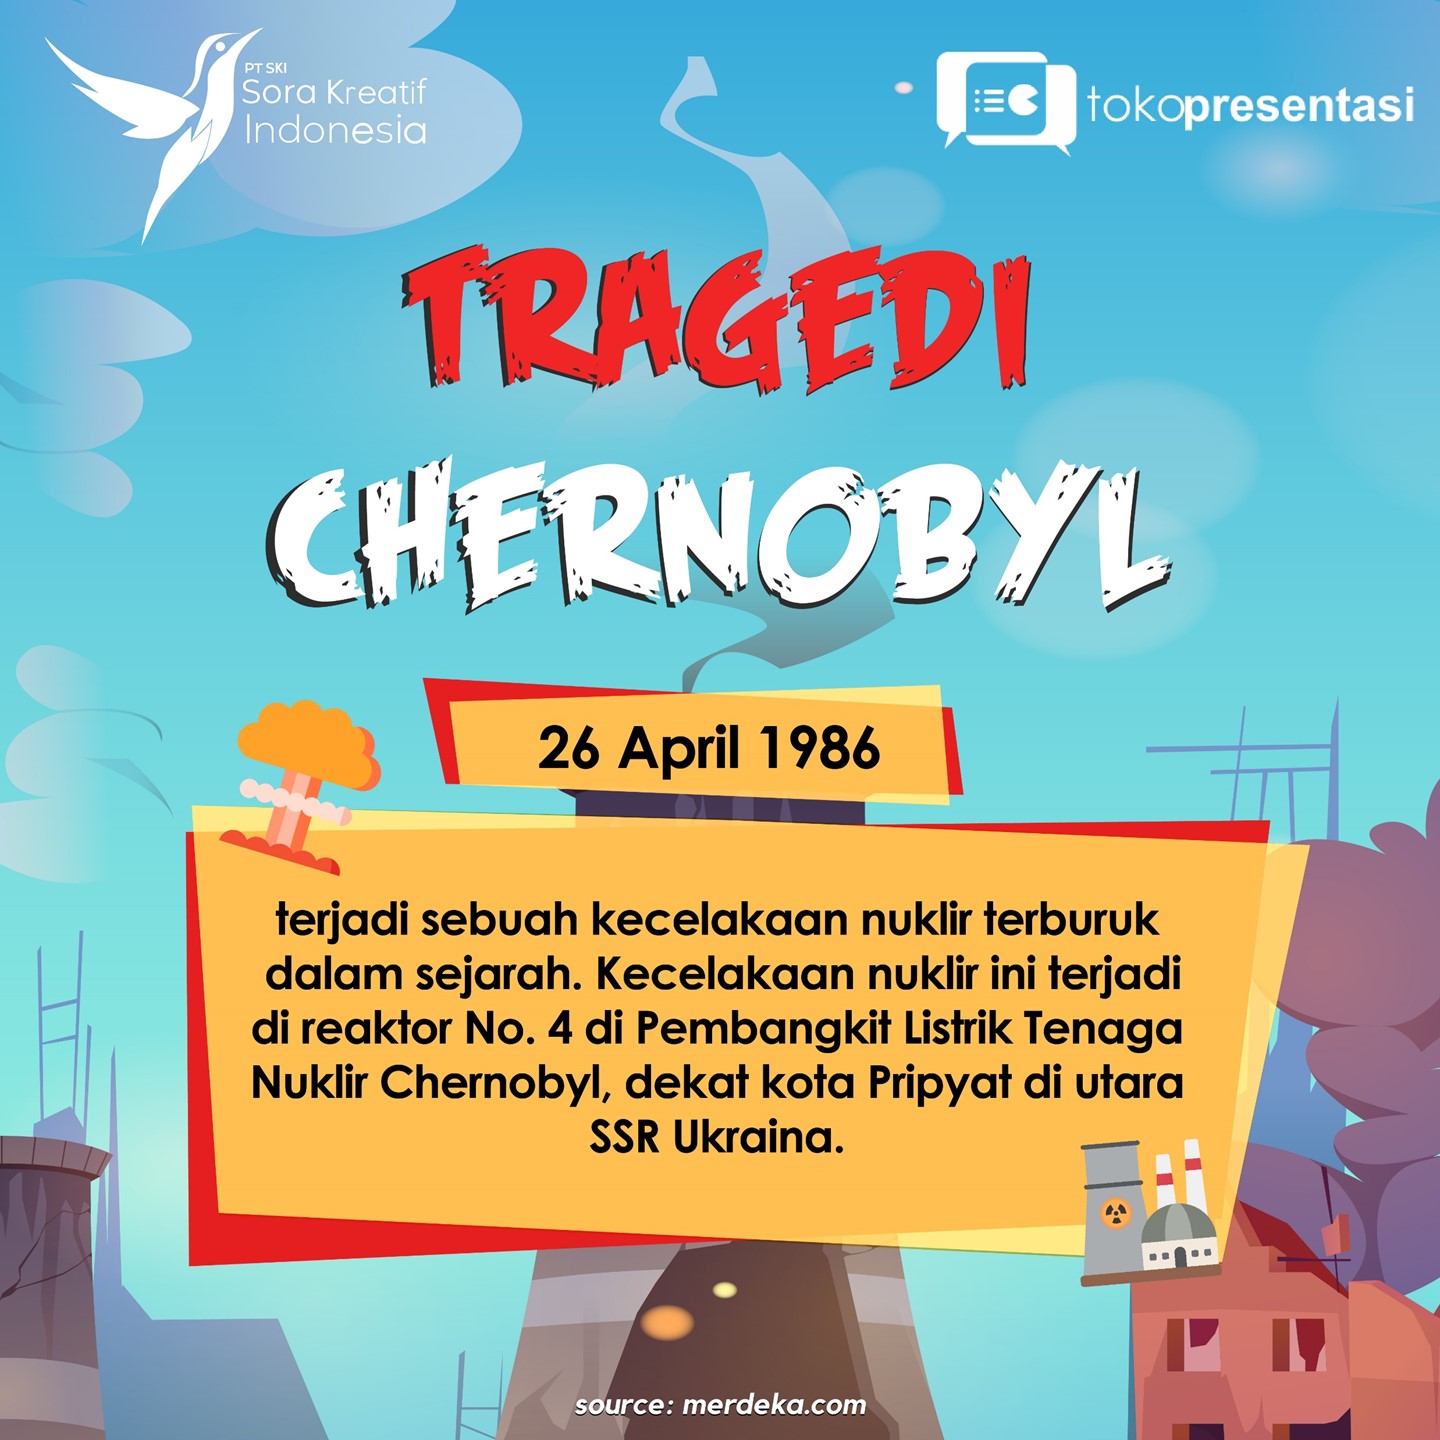 Tragedi chernobyl